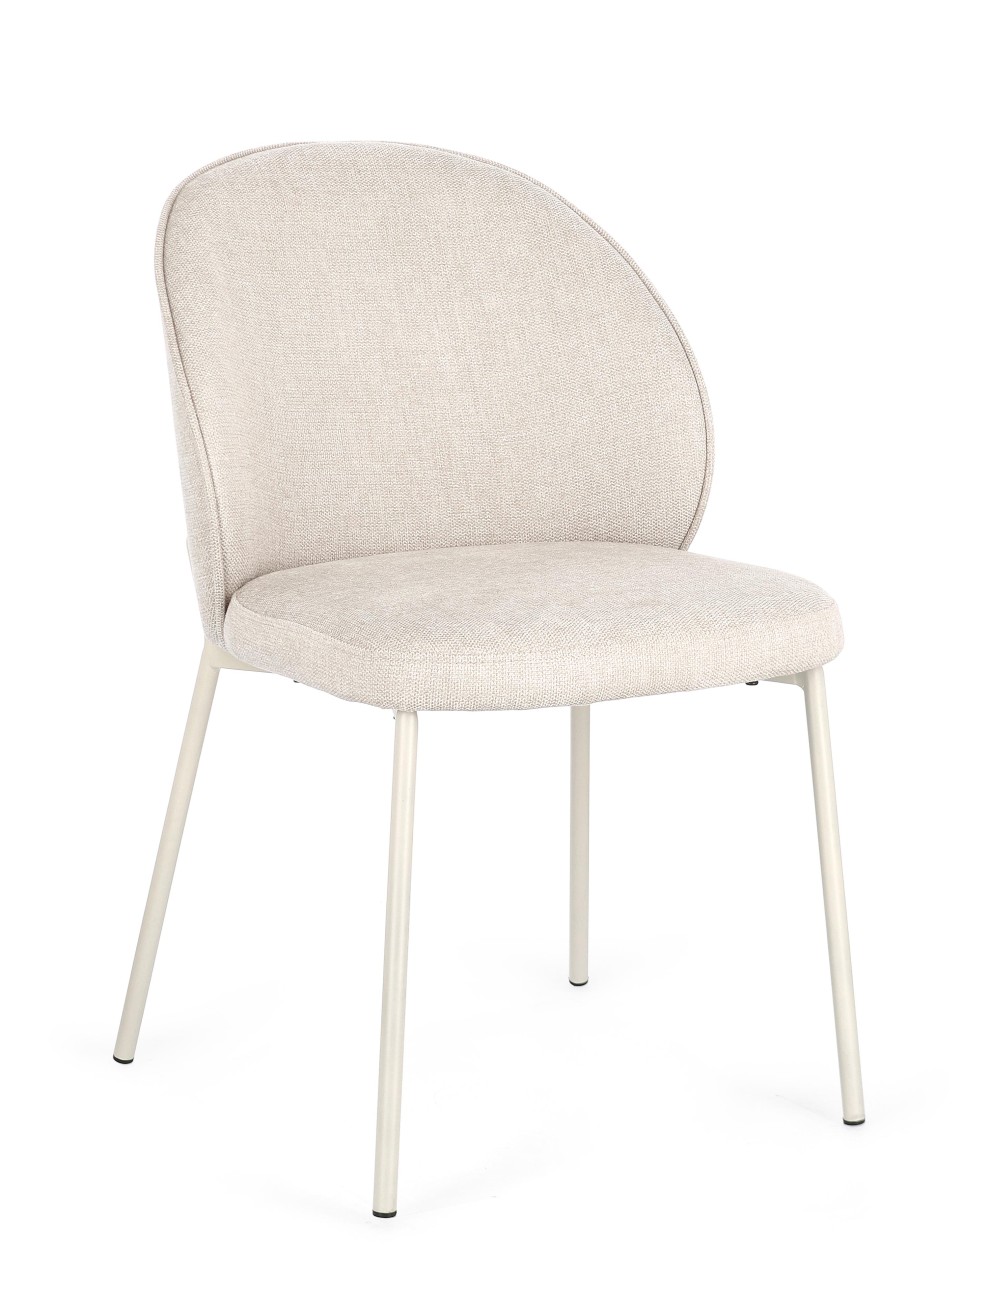 Der Esszimmerstuhl Wendy überzeugt mit seinem modernen Stil. Gefertigt wurde er aus Stoff, welcher einen Beigen Farbton besitzt. Das Gestell ist aus Metall und hat eine Beige Farbe. Der Stuhl besitzt eine Sitzhöhe von 48 cm.